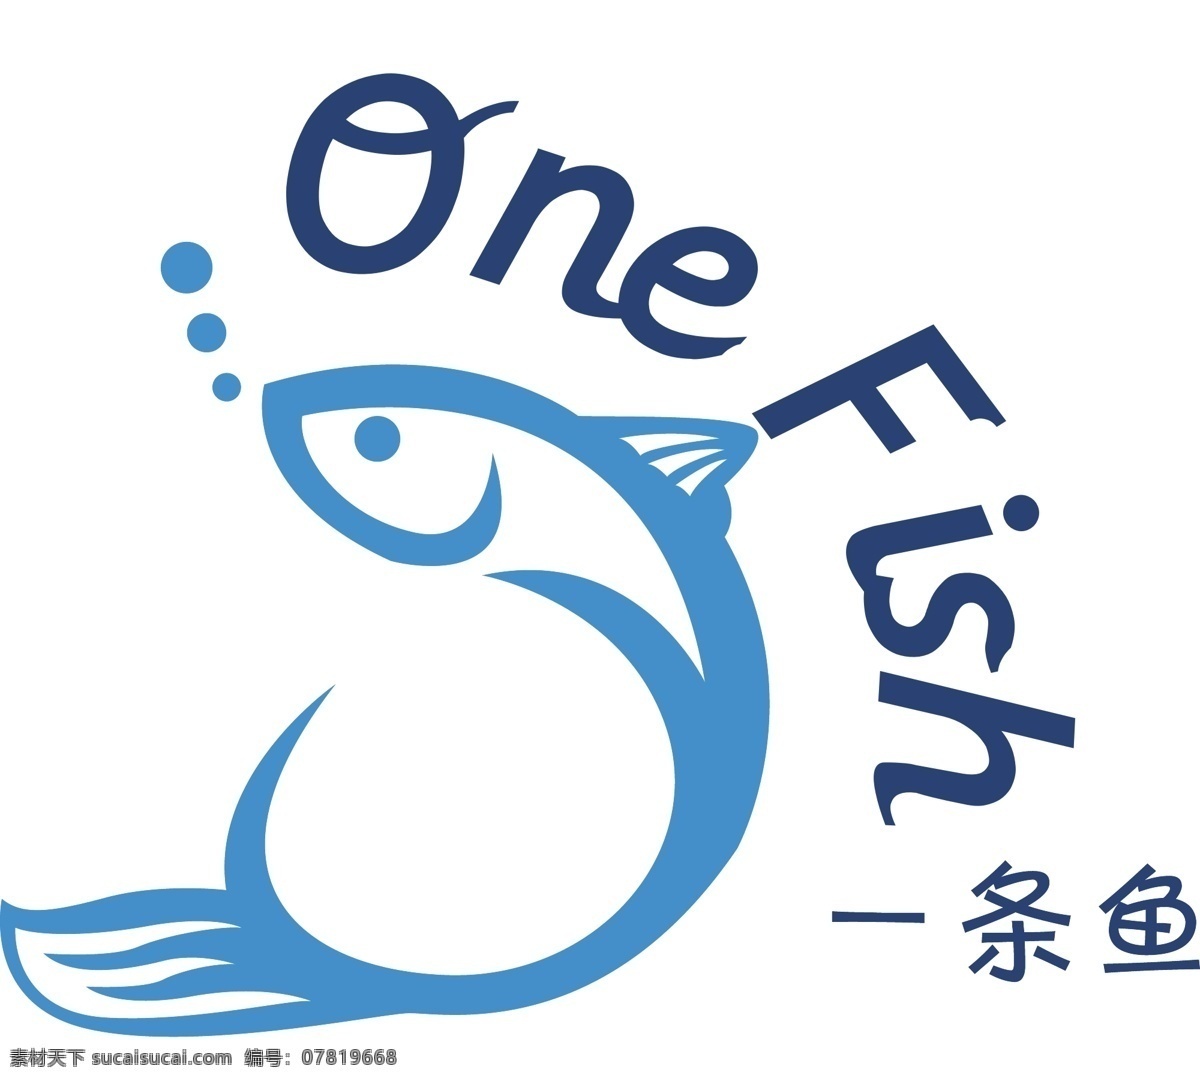 一条鱼标志 一条鱼 标志设计 鱼 蓝鱼 白色